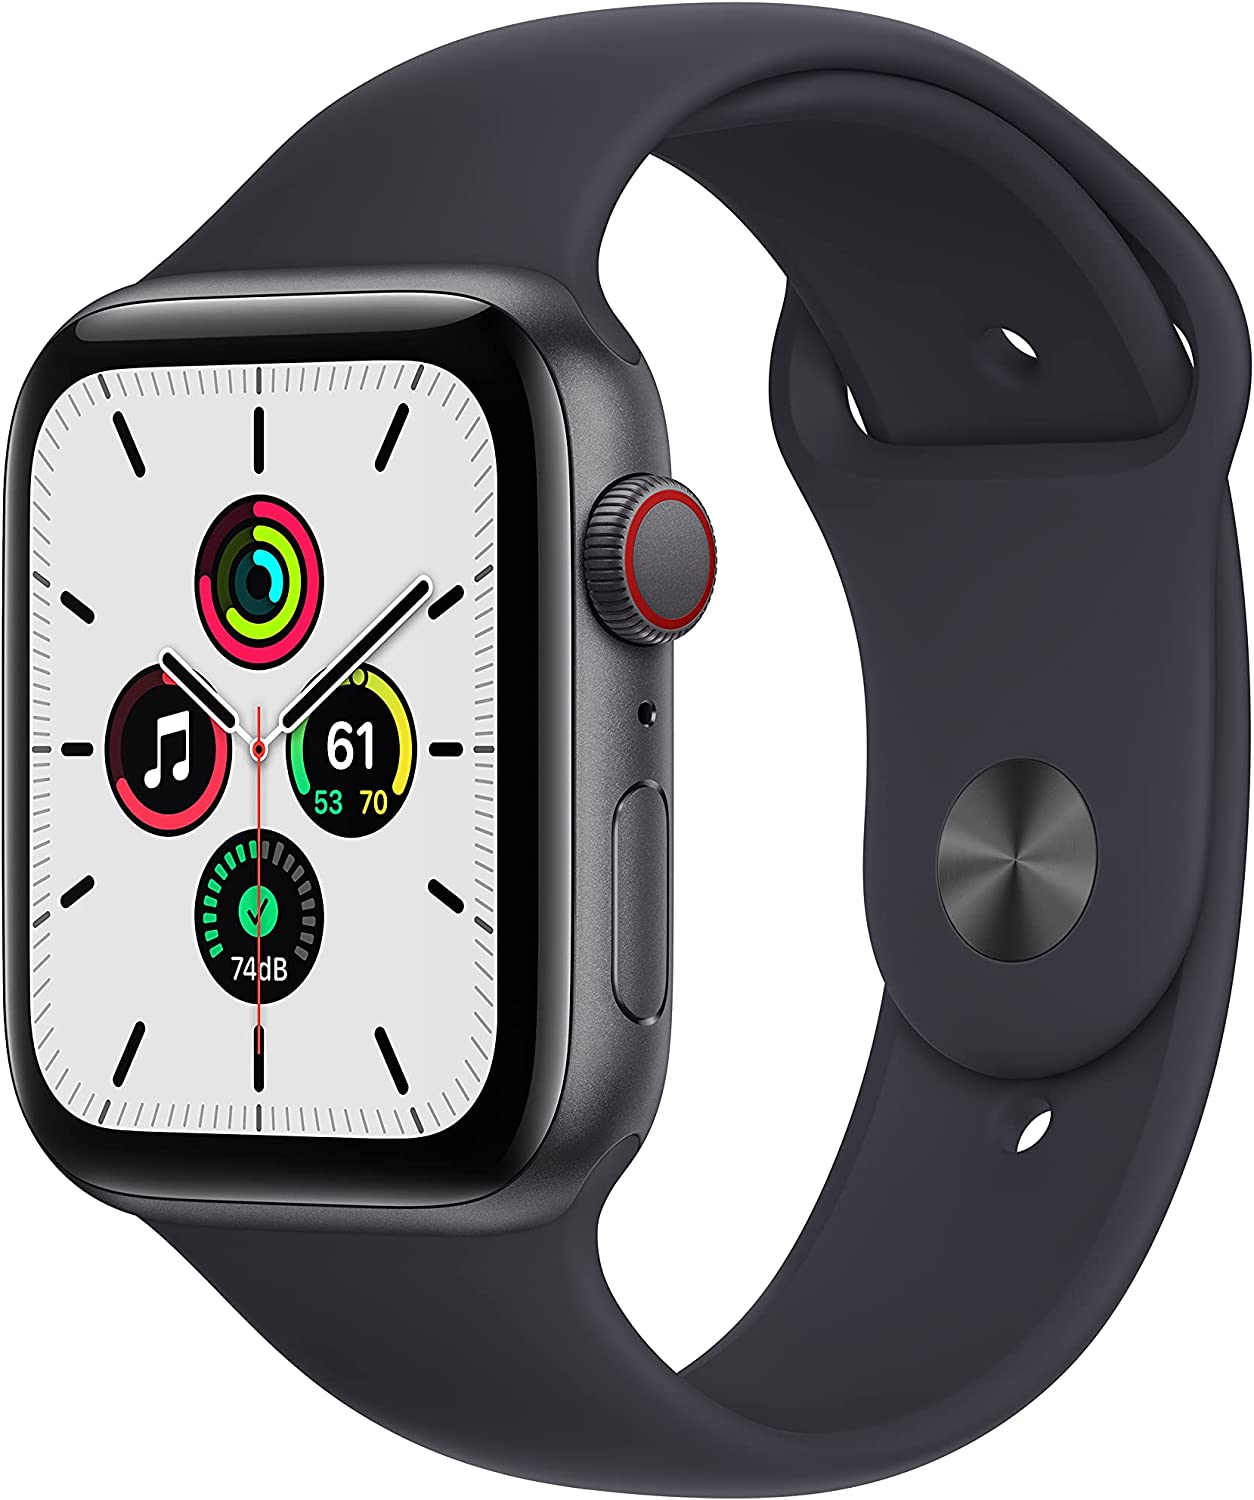 Apple Watch SE 1 vs Apple Watch SE 2